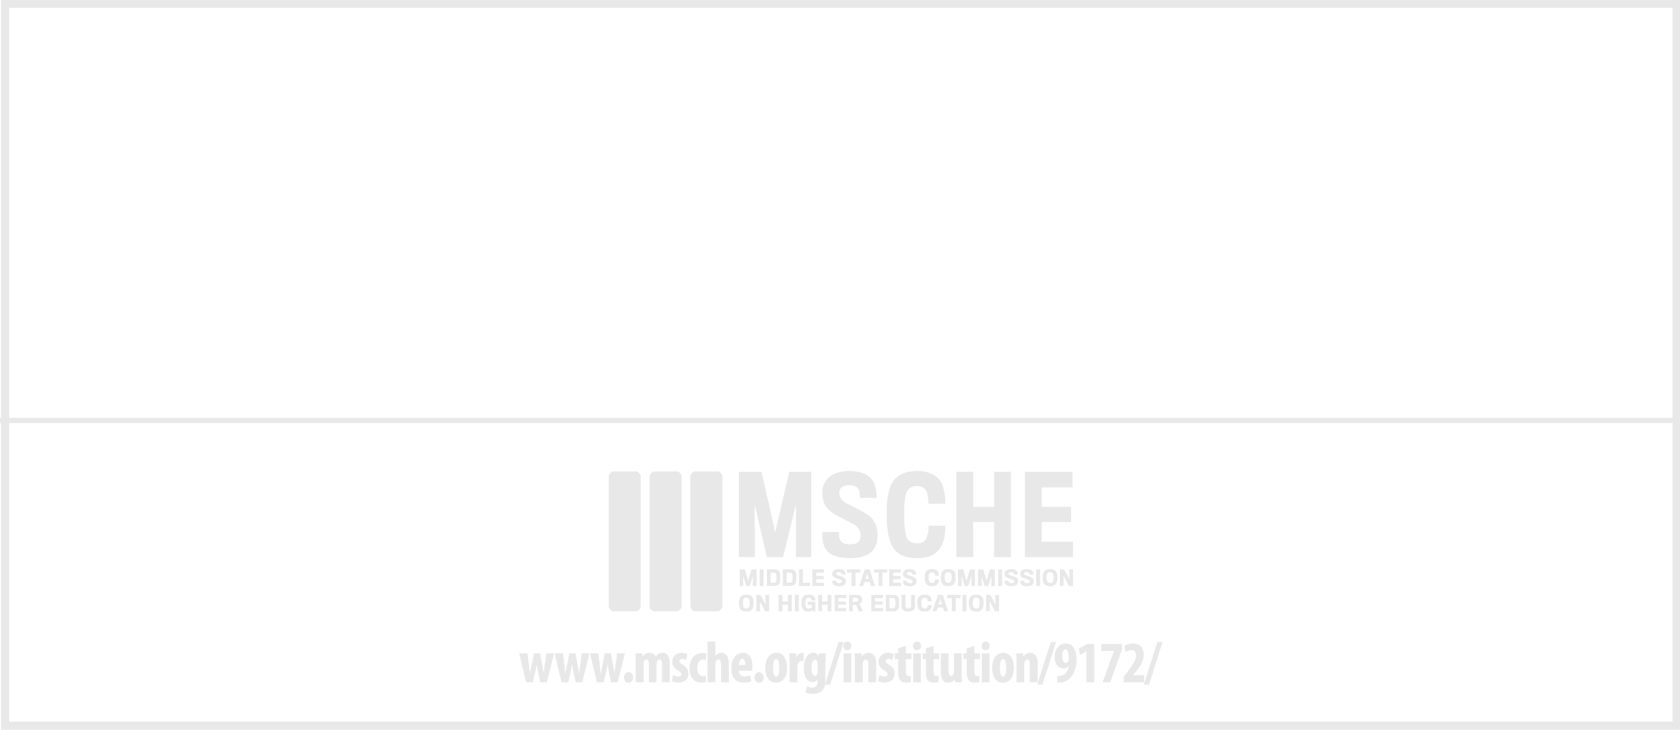 Universidad Acreditada 2015-2020 CNA